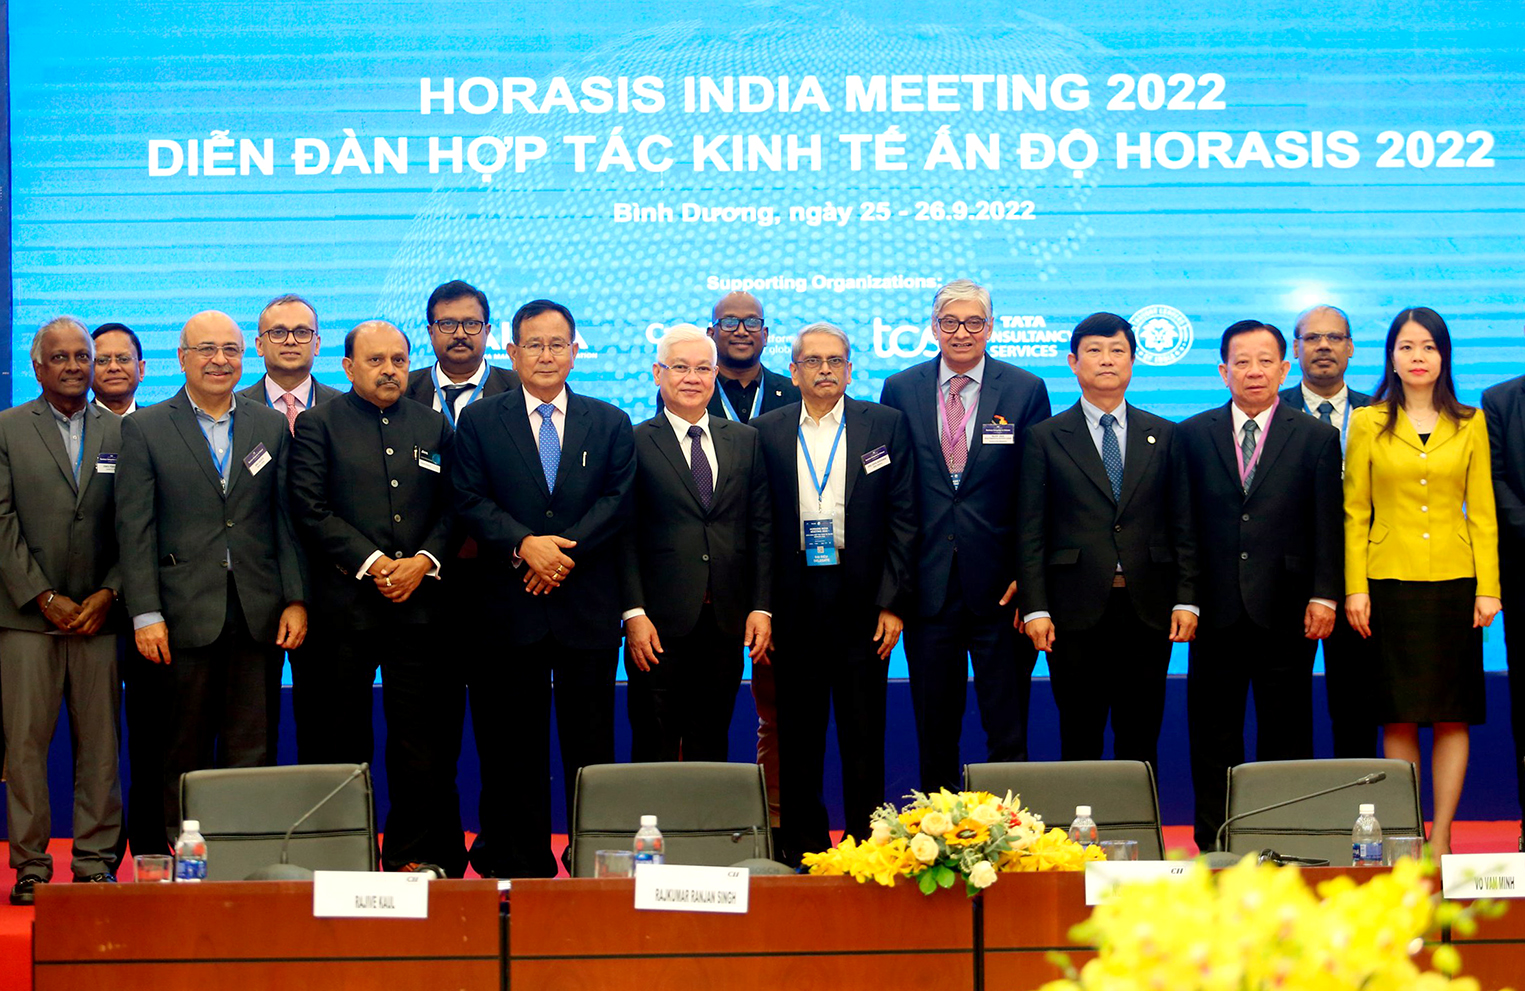 Lãnh đạo tỉnh Bình Dương và Liên đoàn Doanh nghiệp Ấn Độ chụp hình lưu niệm tại Diễn đàn hợp tác kinh tế Horasis Ấn Độ 2022.